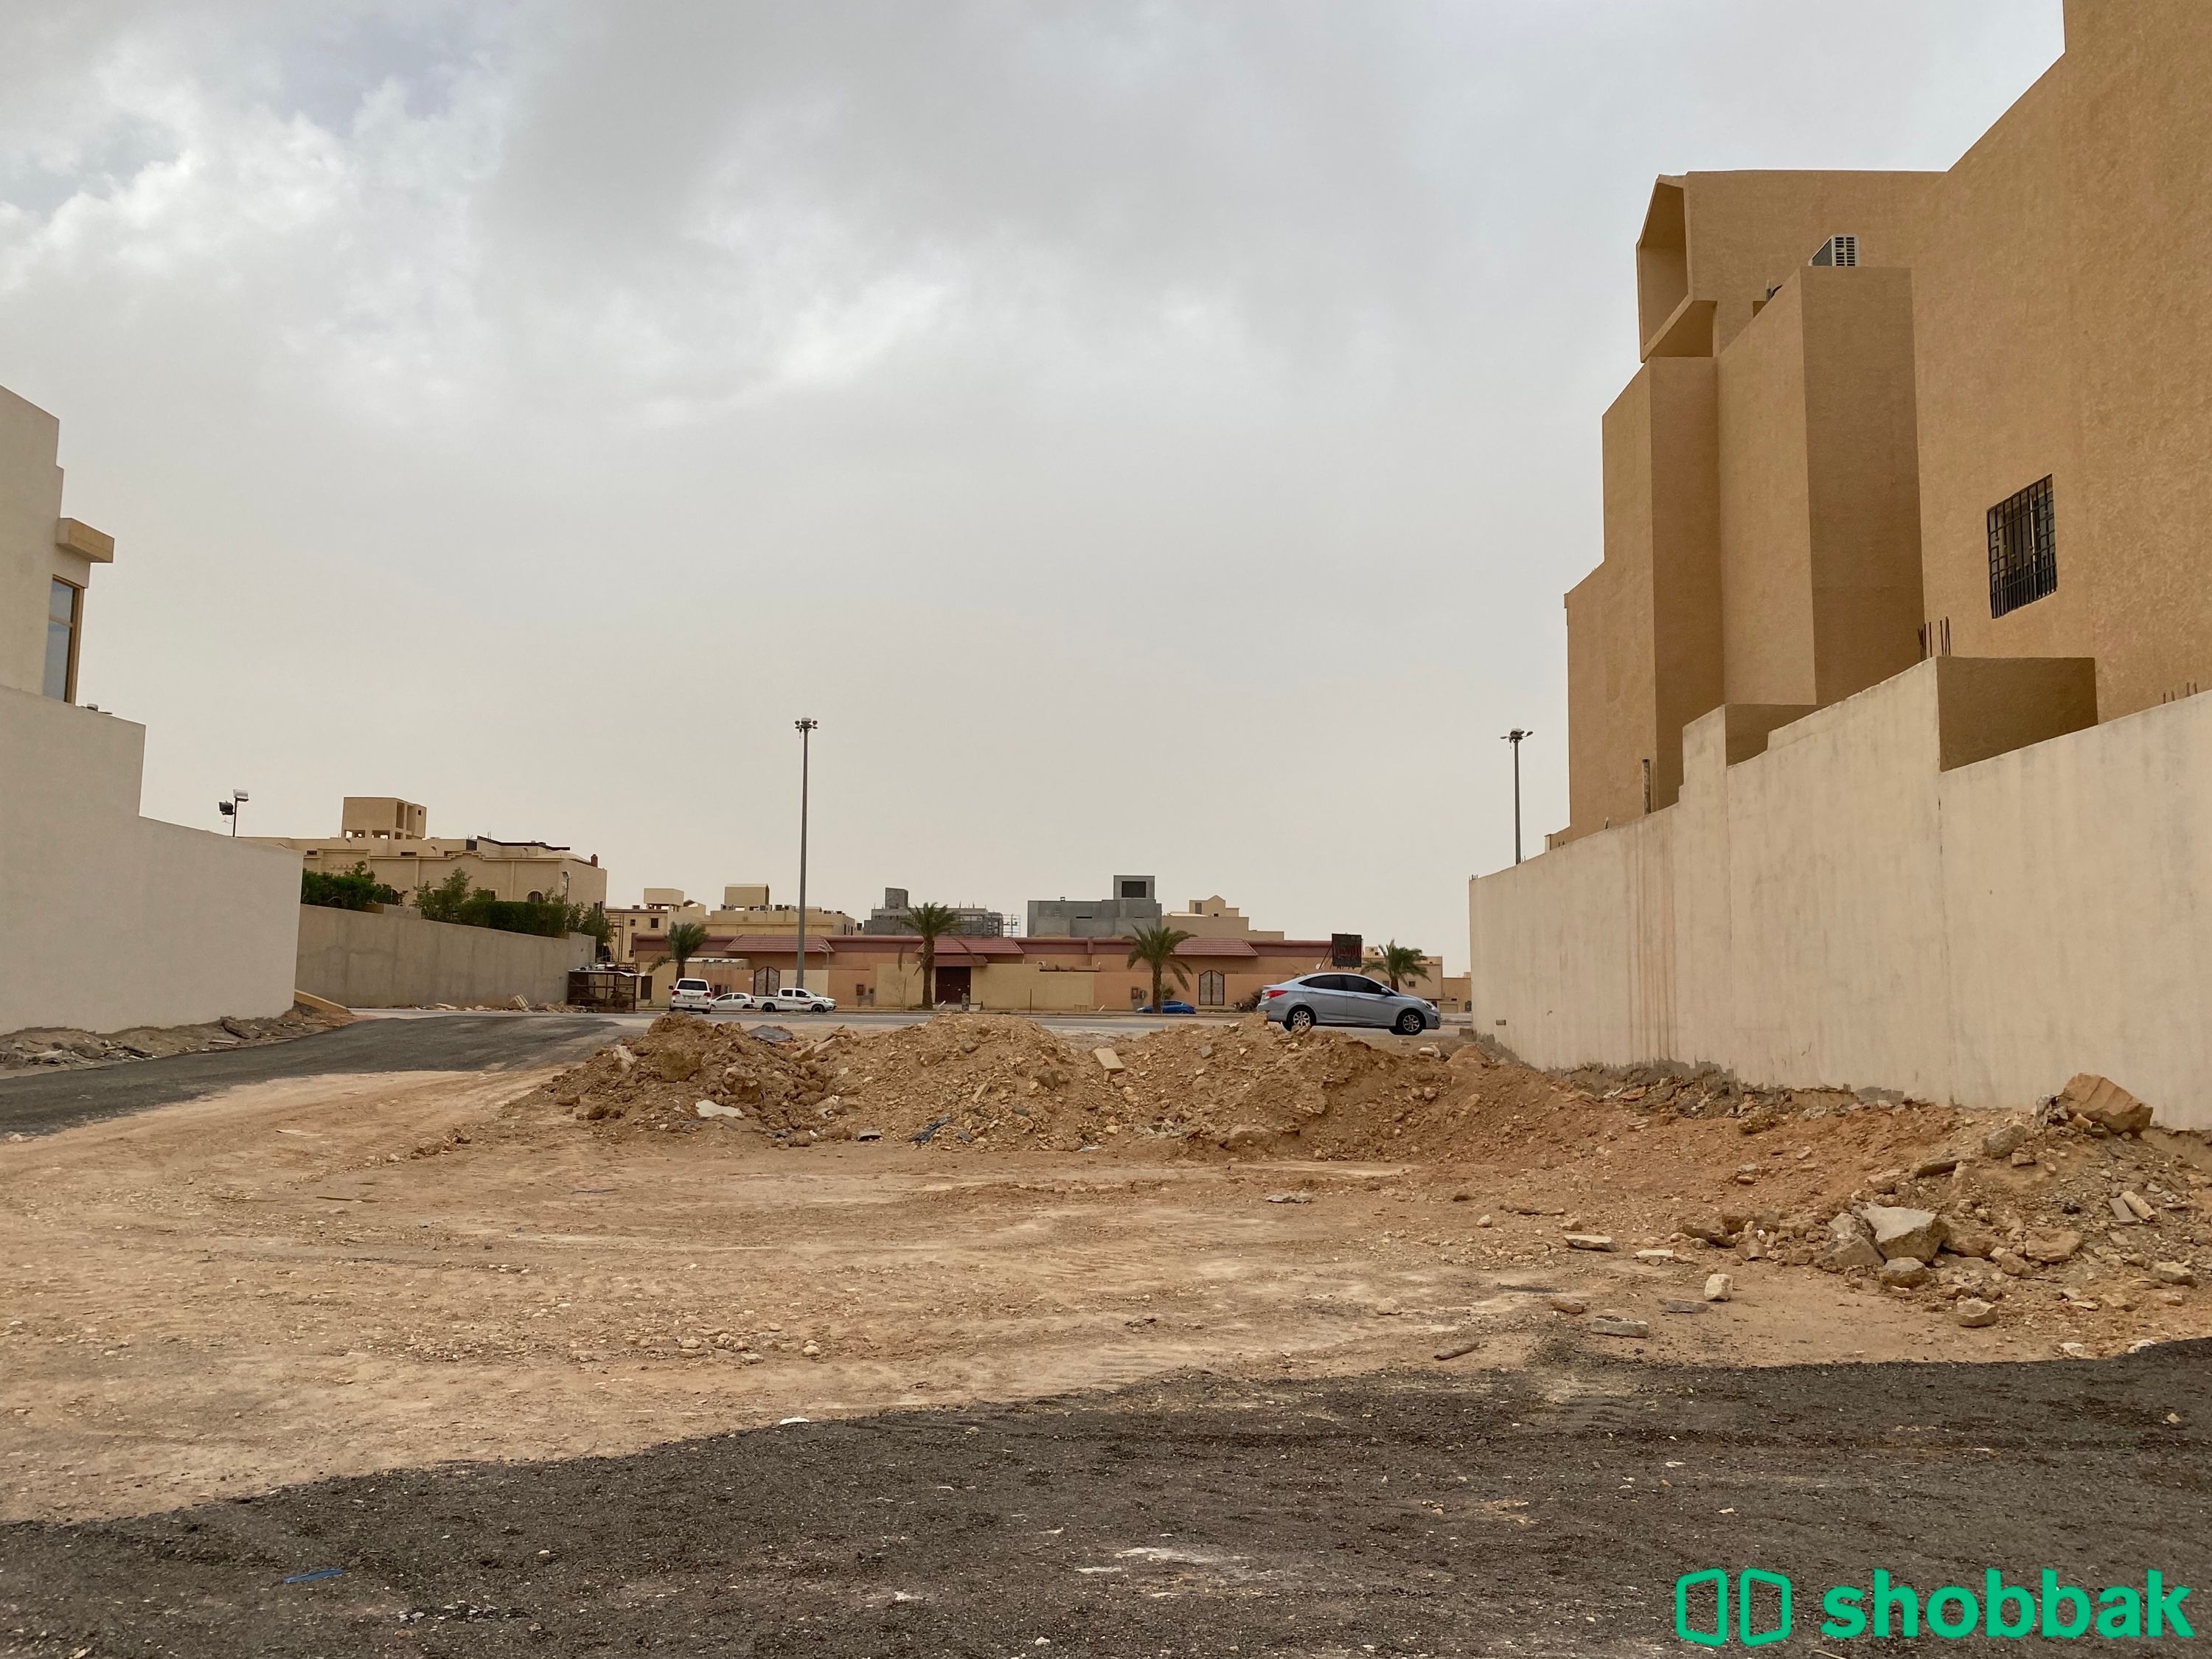 الرياض،حي ظهرة نمار ،طريق نجم الدين الأيوبي  شباك السعودية